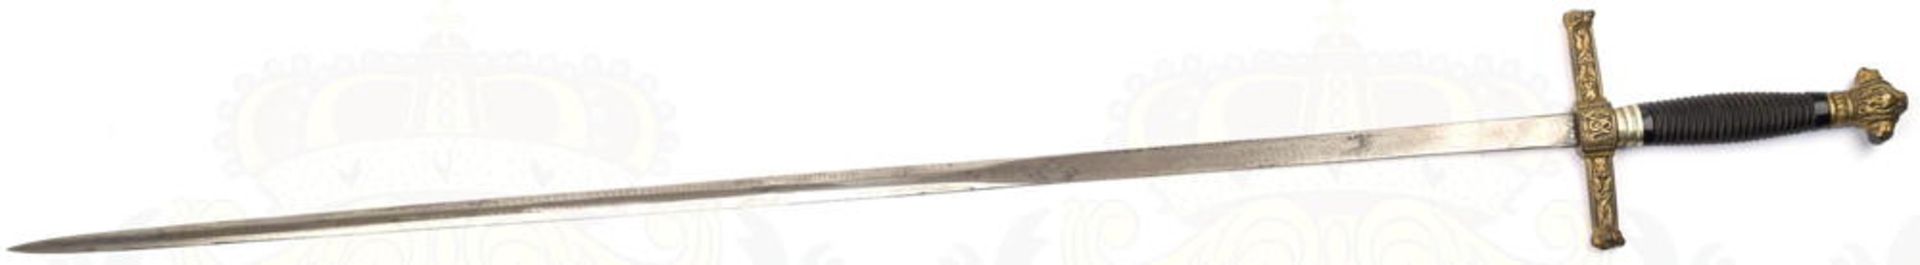 DEGEN, blanke zweischneidige Klinge m. 24cm langer Fehlschärfe, eingeschlagene Bez. „Toledo“, L. 75c - Bild 8 aus 11